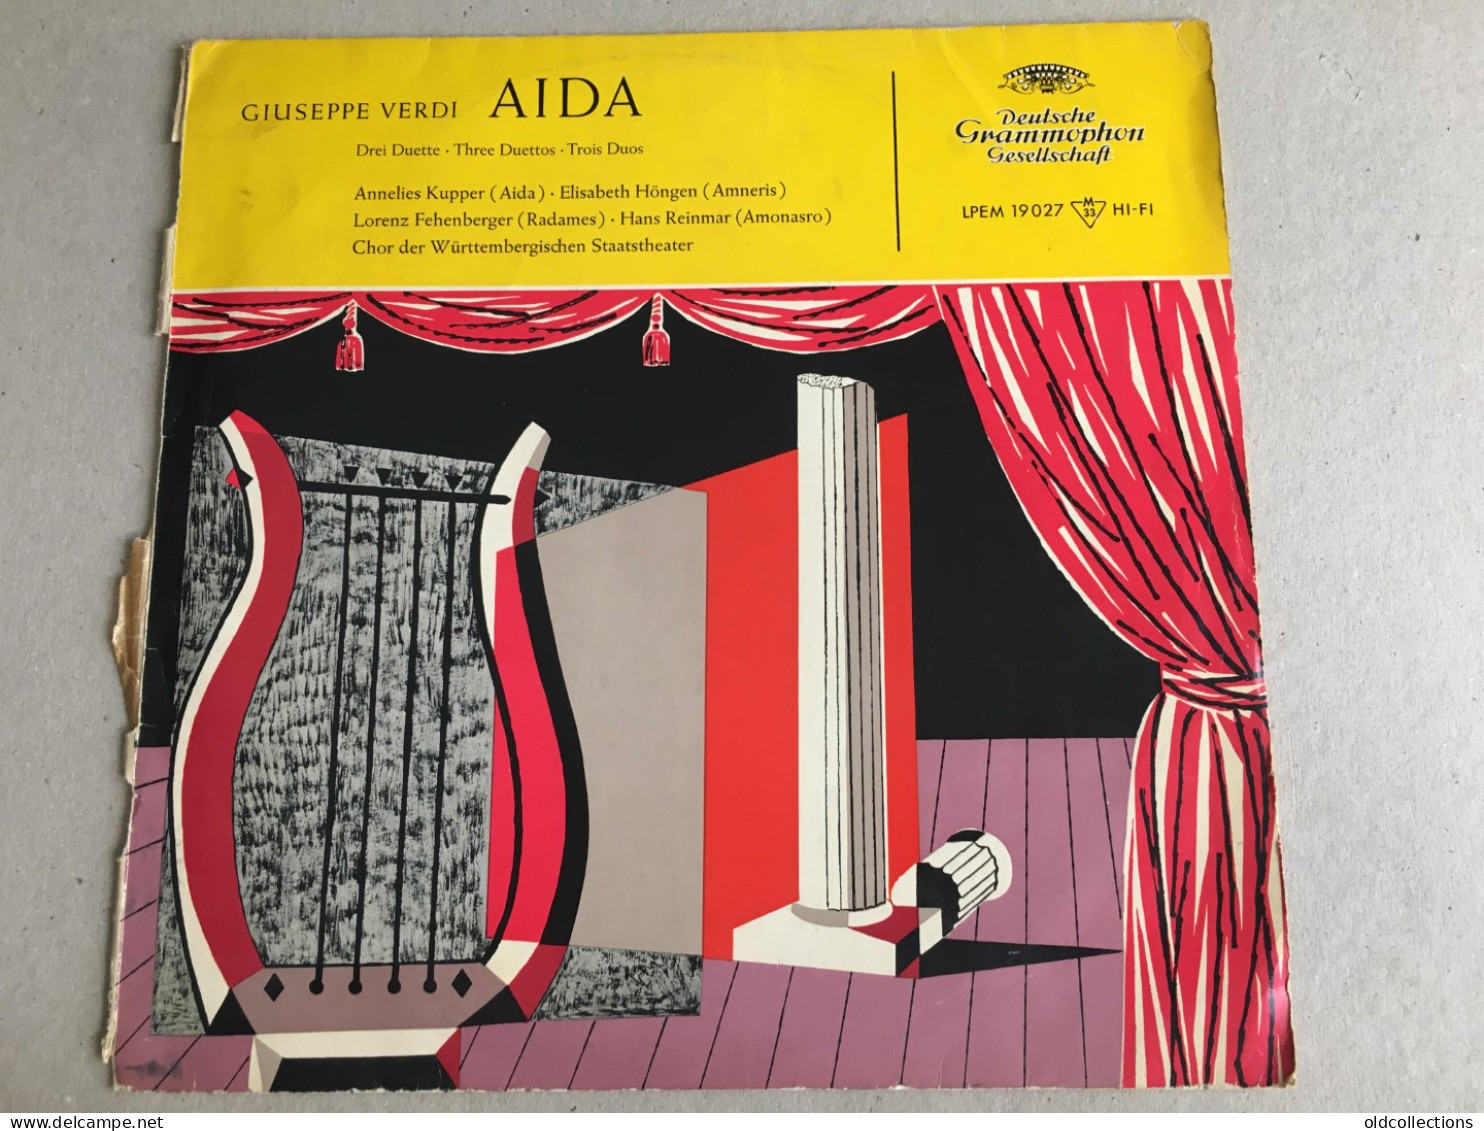 Schallplatte Vinyl Record Disque Vinyle LP Record - Giuseppe Verdi Aida  - Opéra & Opérette